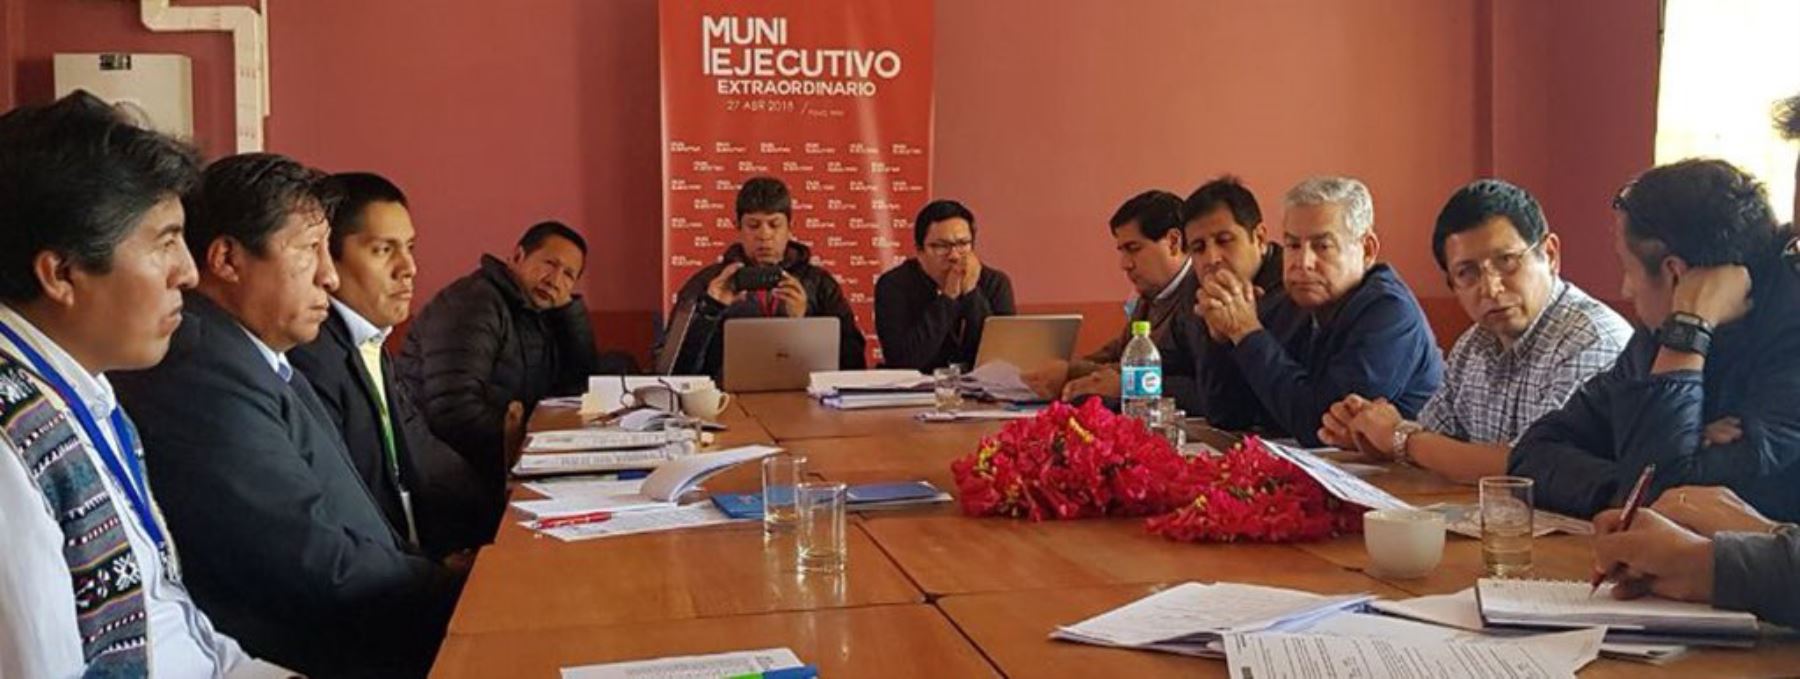 El ministro de Transportes y Comunicaciones, Edmer Trujillo, participó en el Muni Ejecutivo Extraordinario, realizado en la isla de Taquile, ubicada en el lago Titicaca, en la región Puno, para atender las necesidades de la población relacionadas a infraestructura vial lo más rápido posible y con respeto a la normatividad vigente.